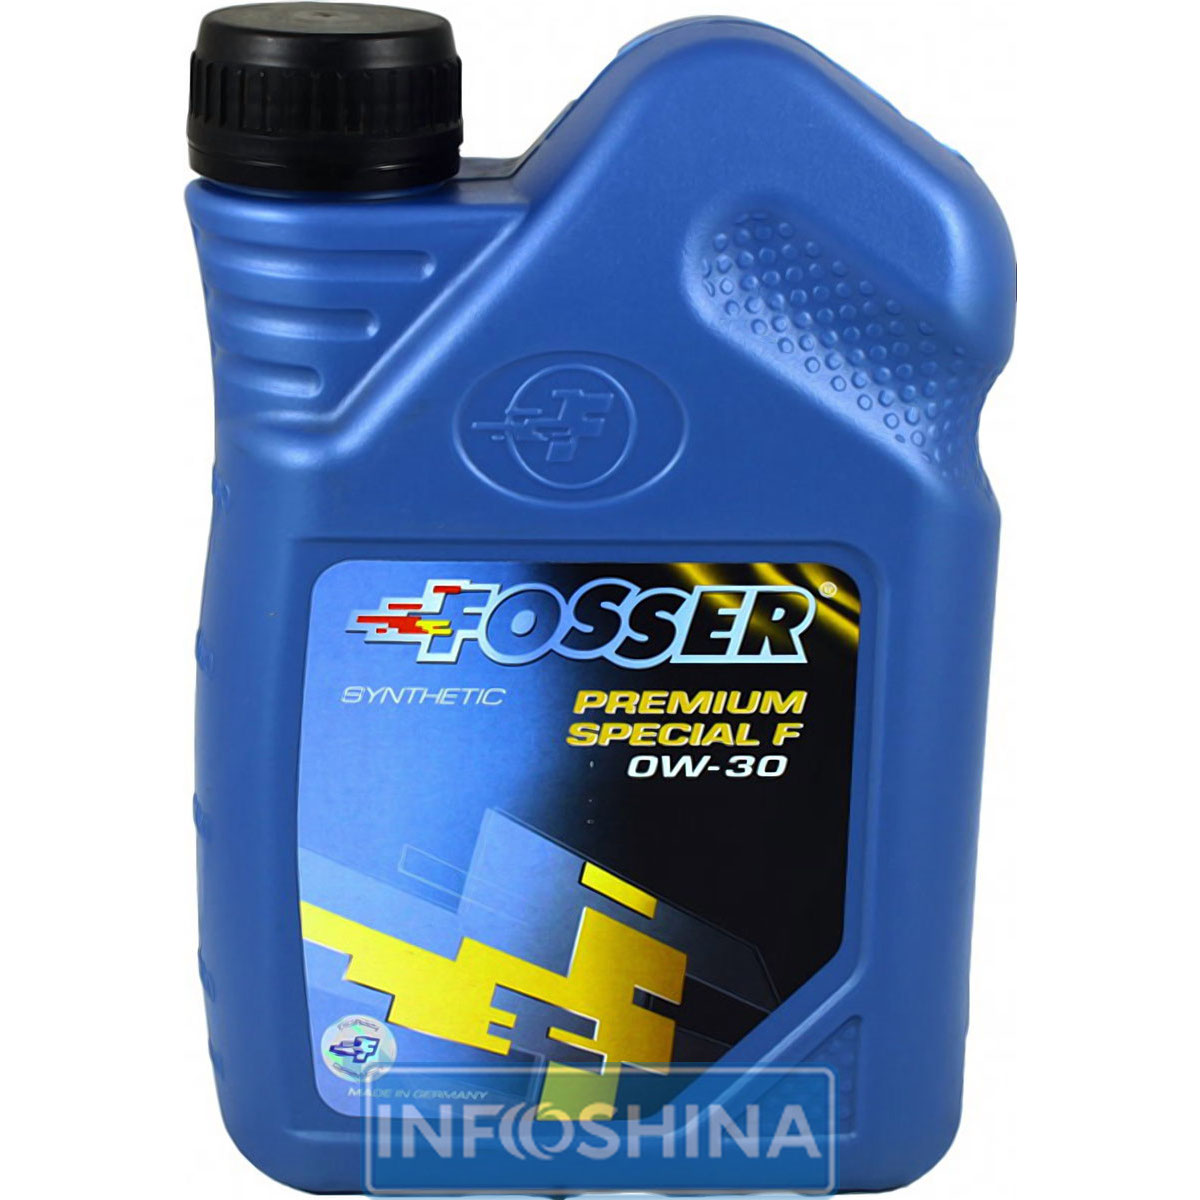 Fosser Premium Special F 0W-30